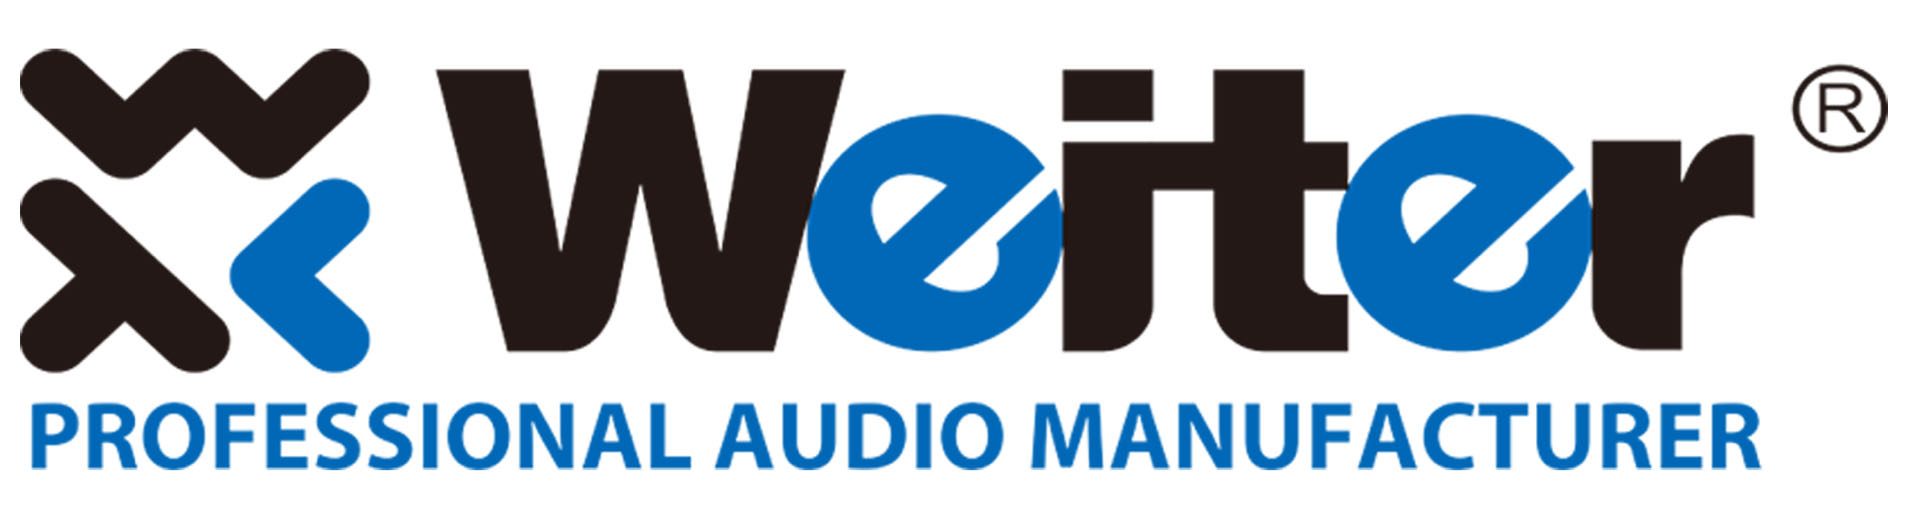 Weit Audio Manufacturer